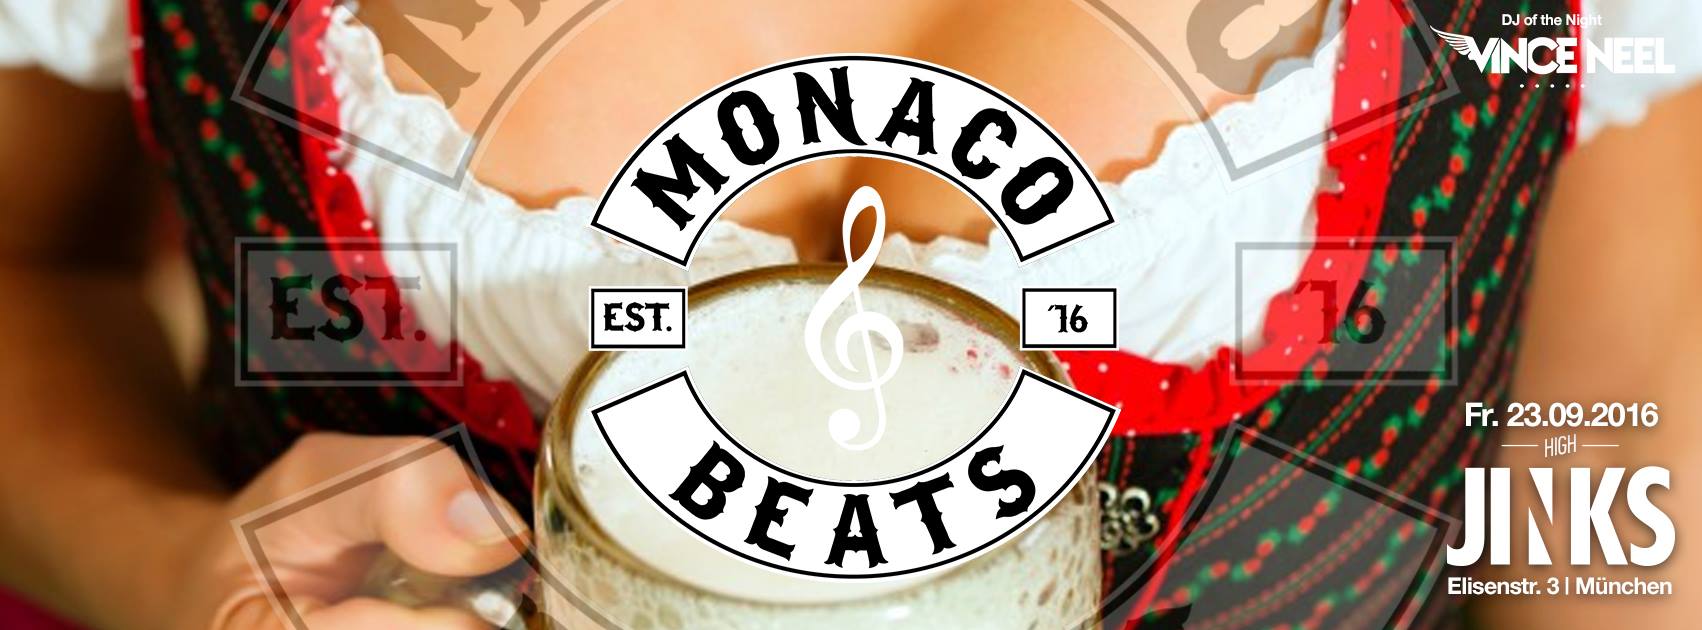 monaco-beats-after-wiesn-2016